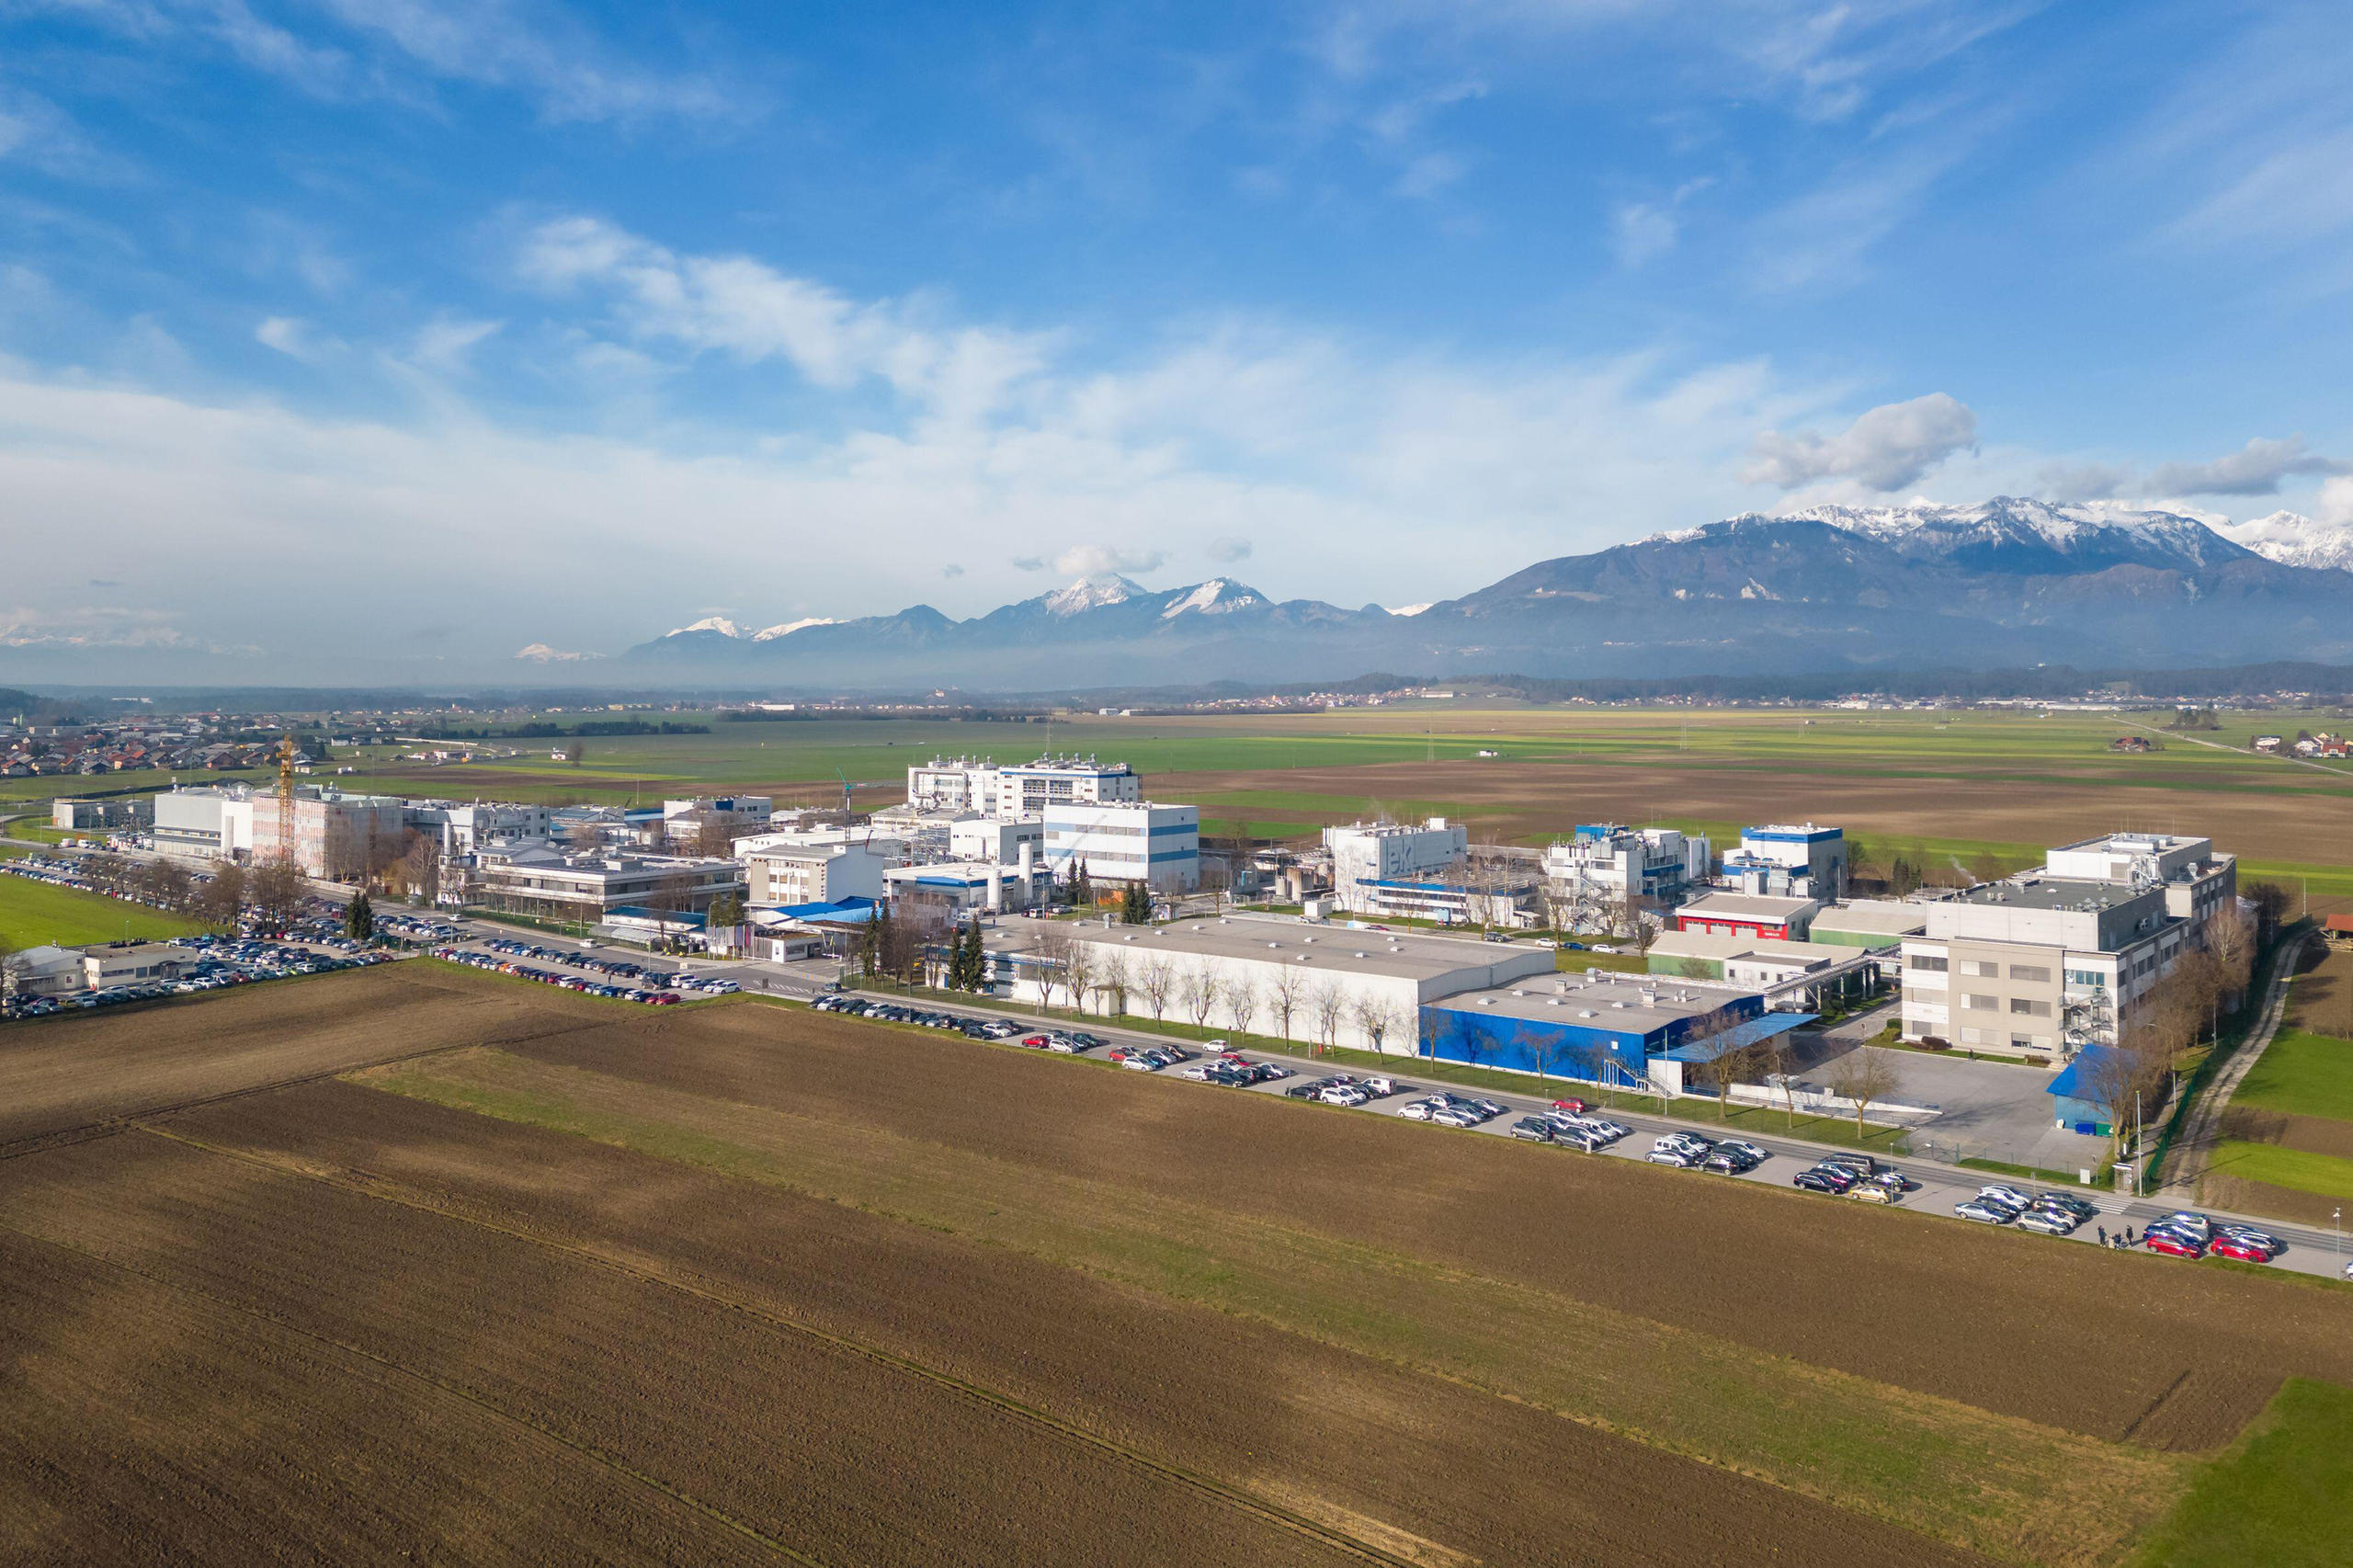 位於斯洛維尼亞首都盧布爾雅那以北約15公里的門蓋什鎮(Mengeš)，雖然僅有8’000名居民，卻是諾華公司全球最大的生物藥原料生產基地的所在地。